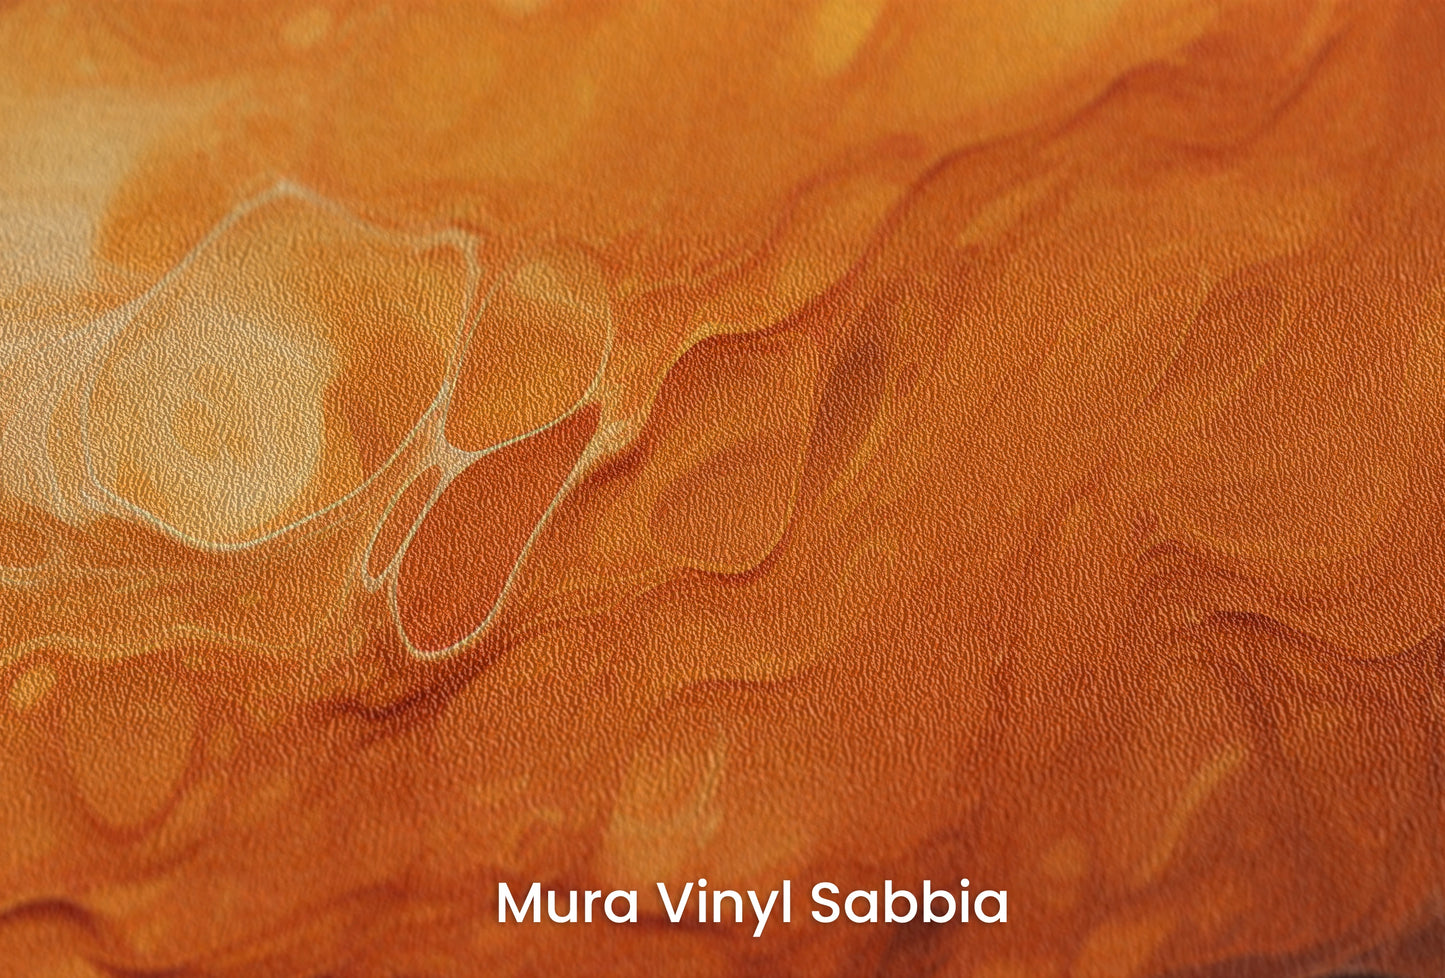 Zbliżenie na artystyczną fototapetę o nazwie Mercurial Craters na podłożu Mura Vinyl Sabbia struktura grubego ziarna piasku.